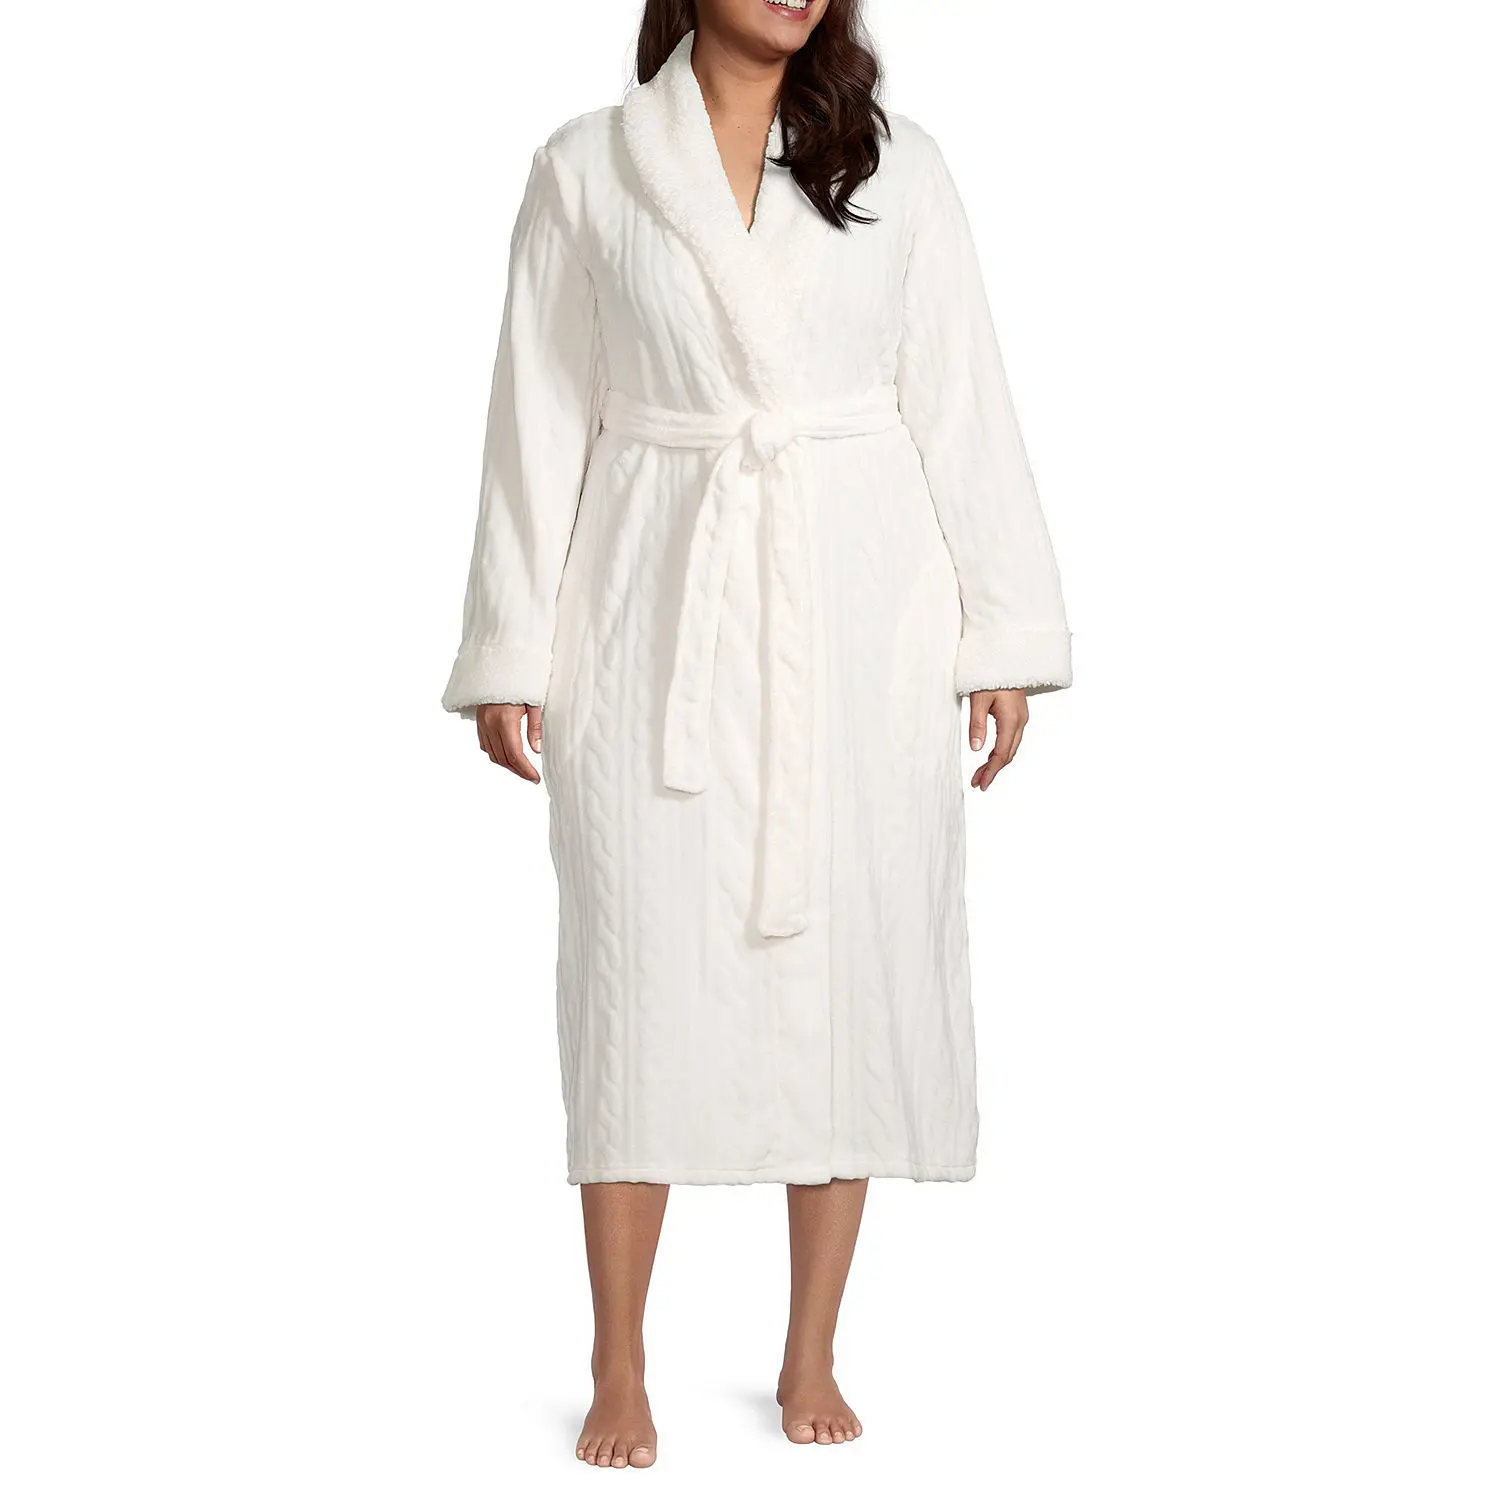 Grosir handuk mandi kamar mandi jubah mandi spa hotel bulu karang handuk mandi dewasa jubah mandi untuk wanita